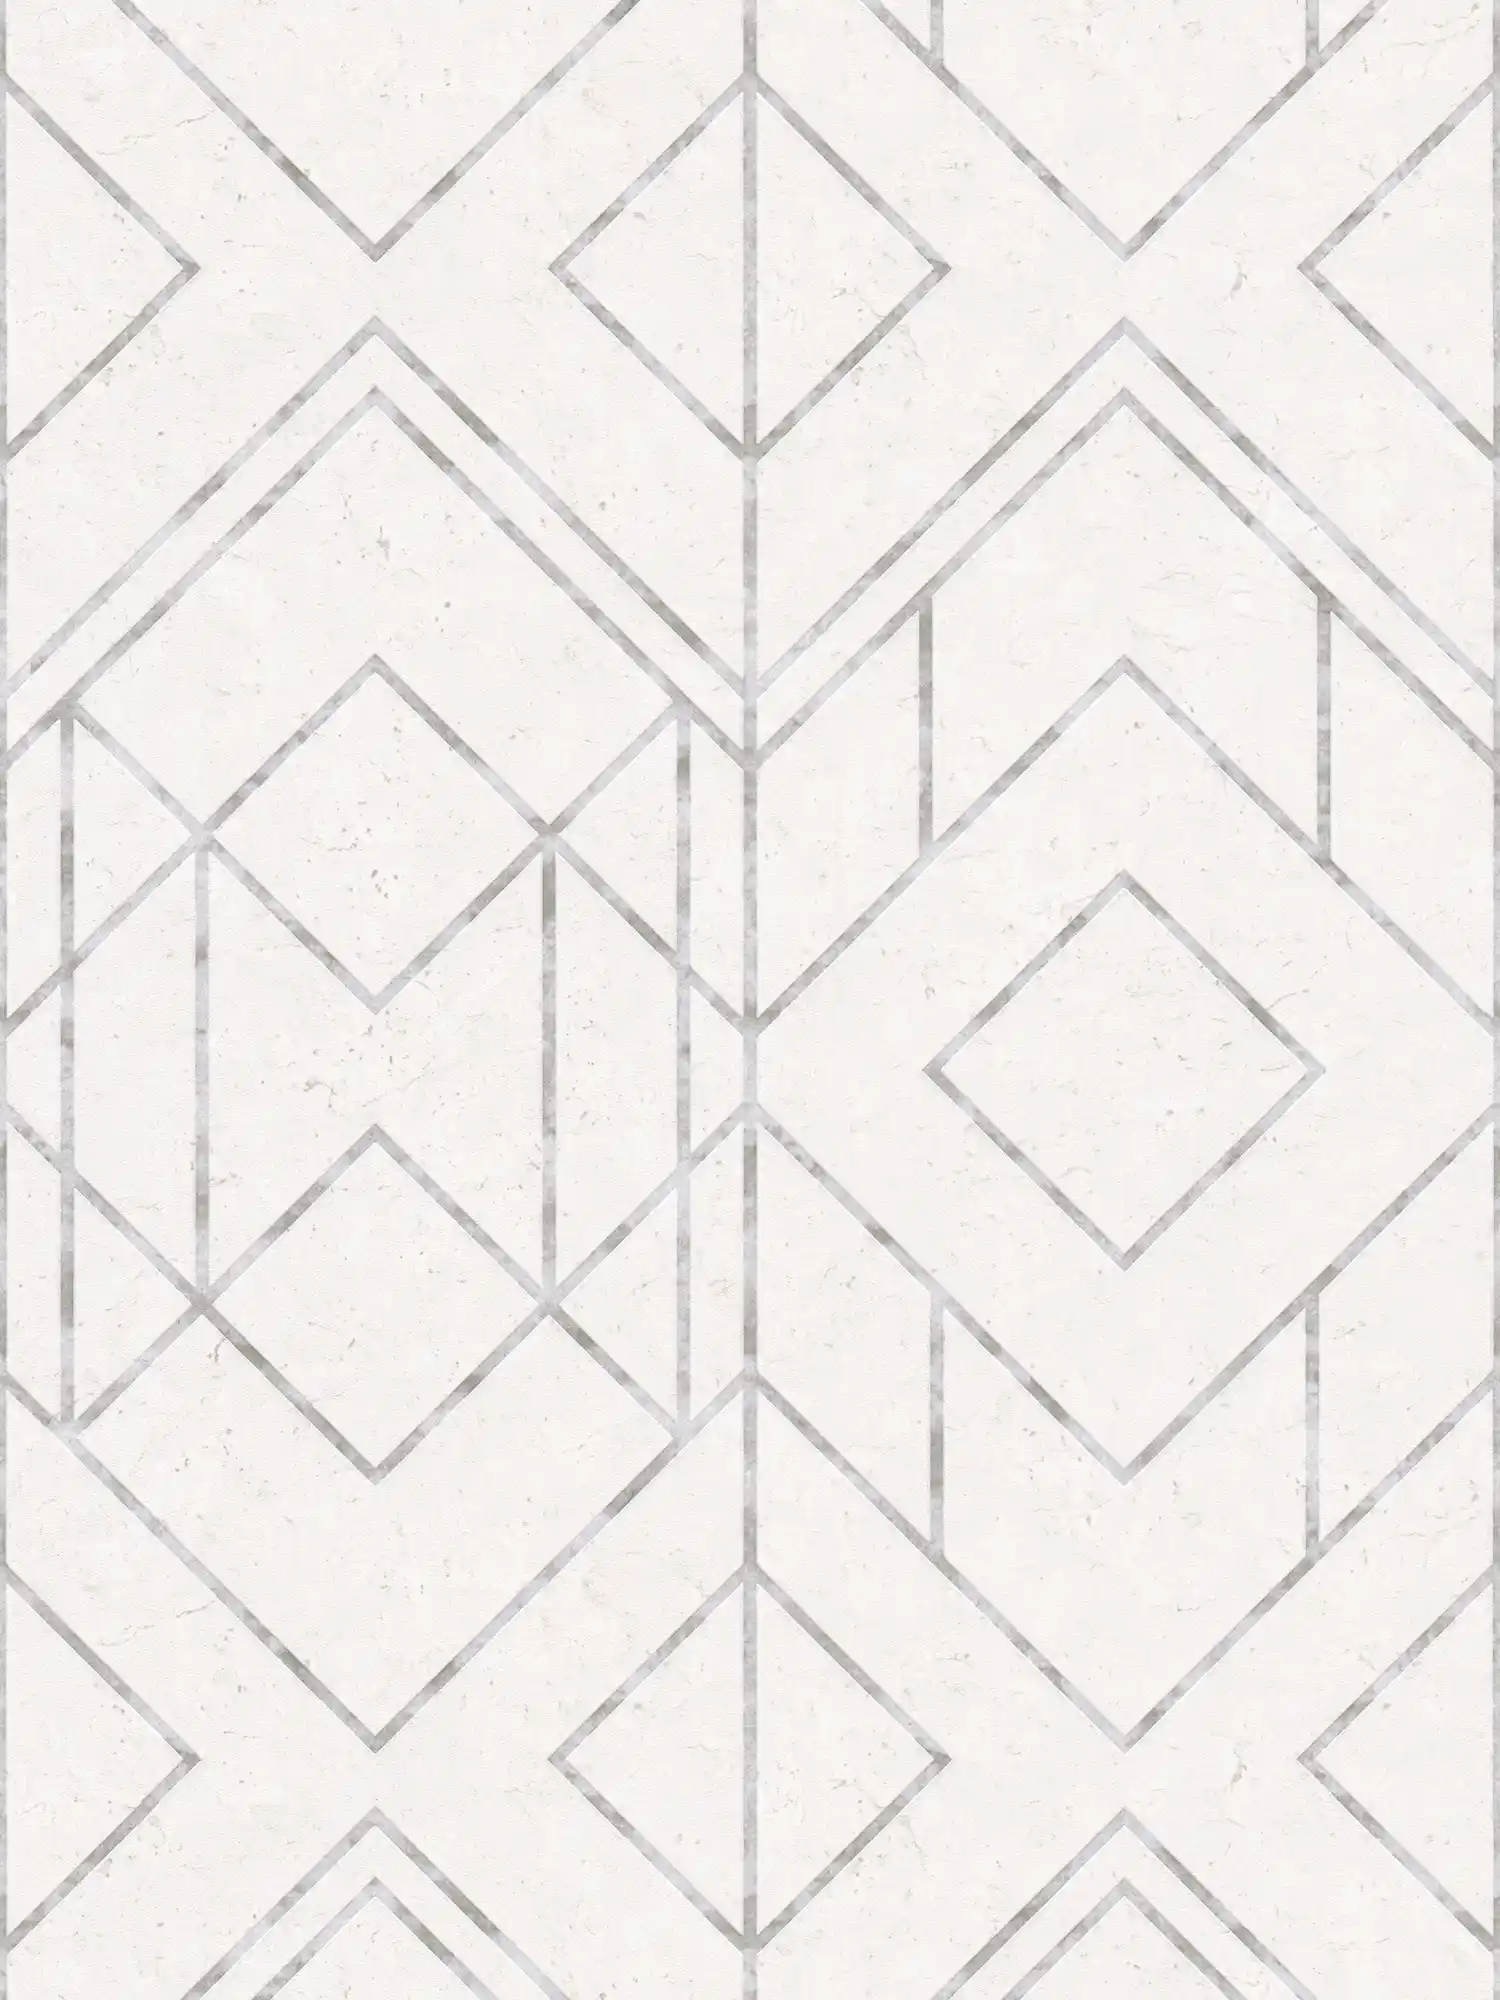 Papier peint graphique à motifs avec accents métalliques - gris, métallique, blanc
